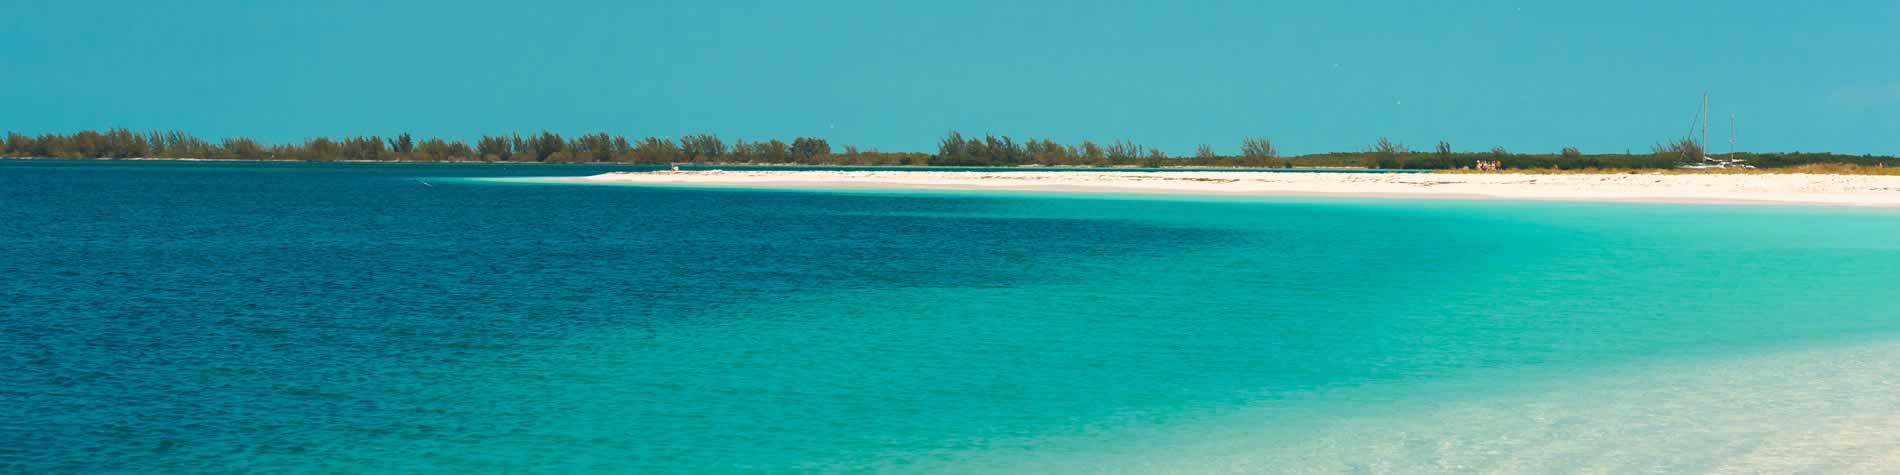 View of Playa Paradiso